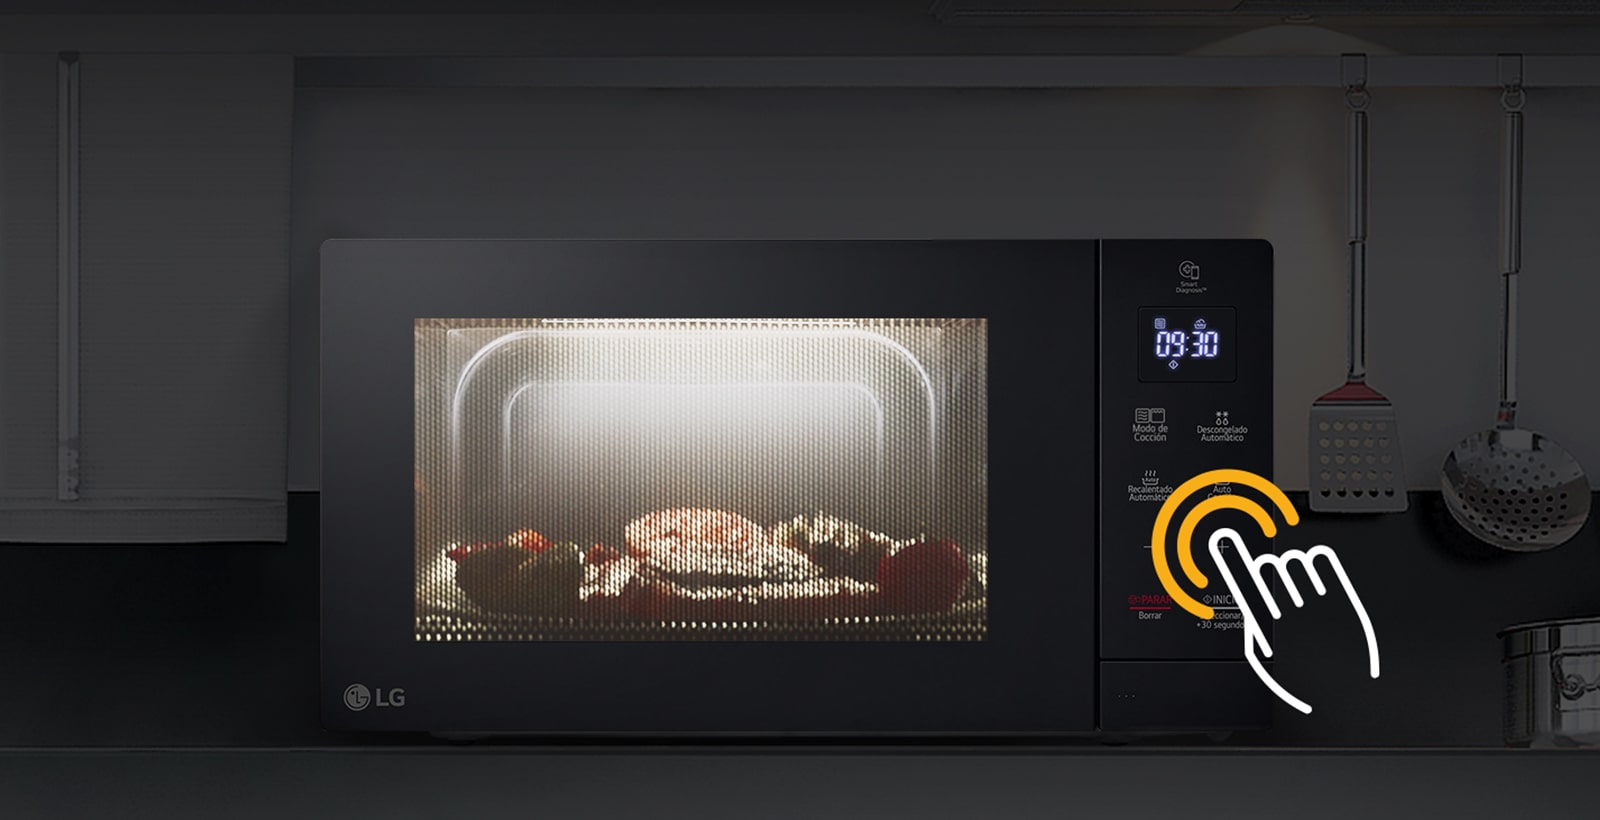 La comida se cocina en el interior con función LED en la cocina donde las luces están apagadas.